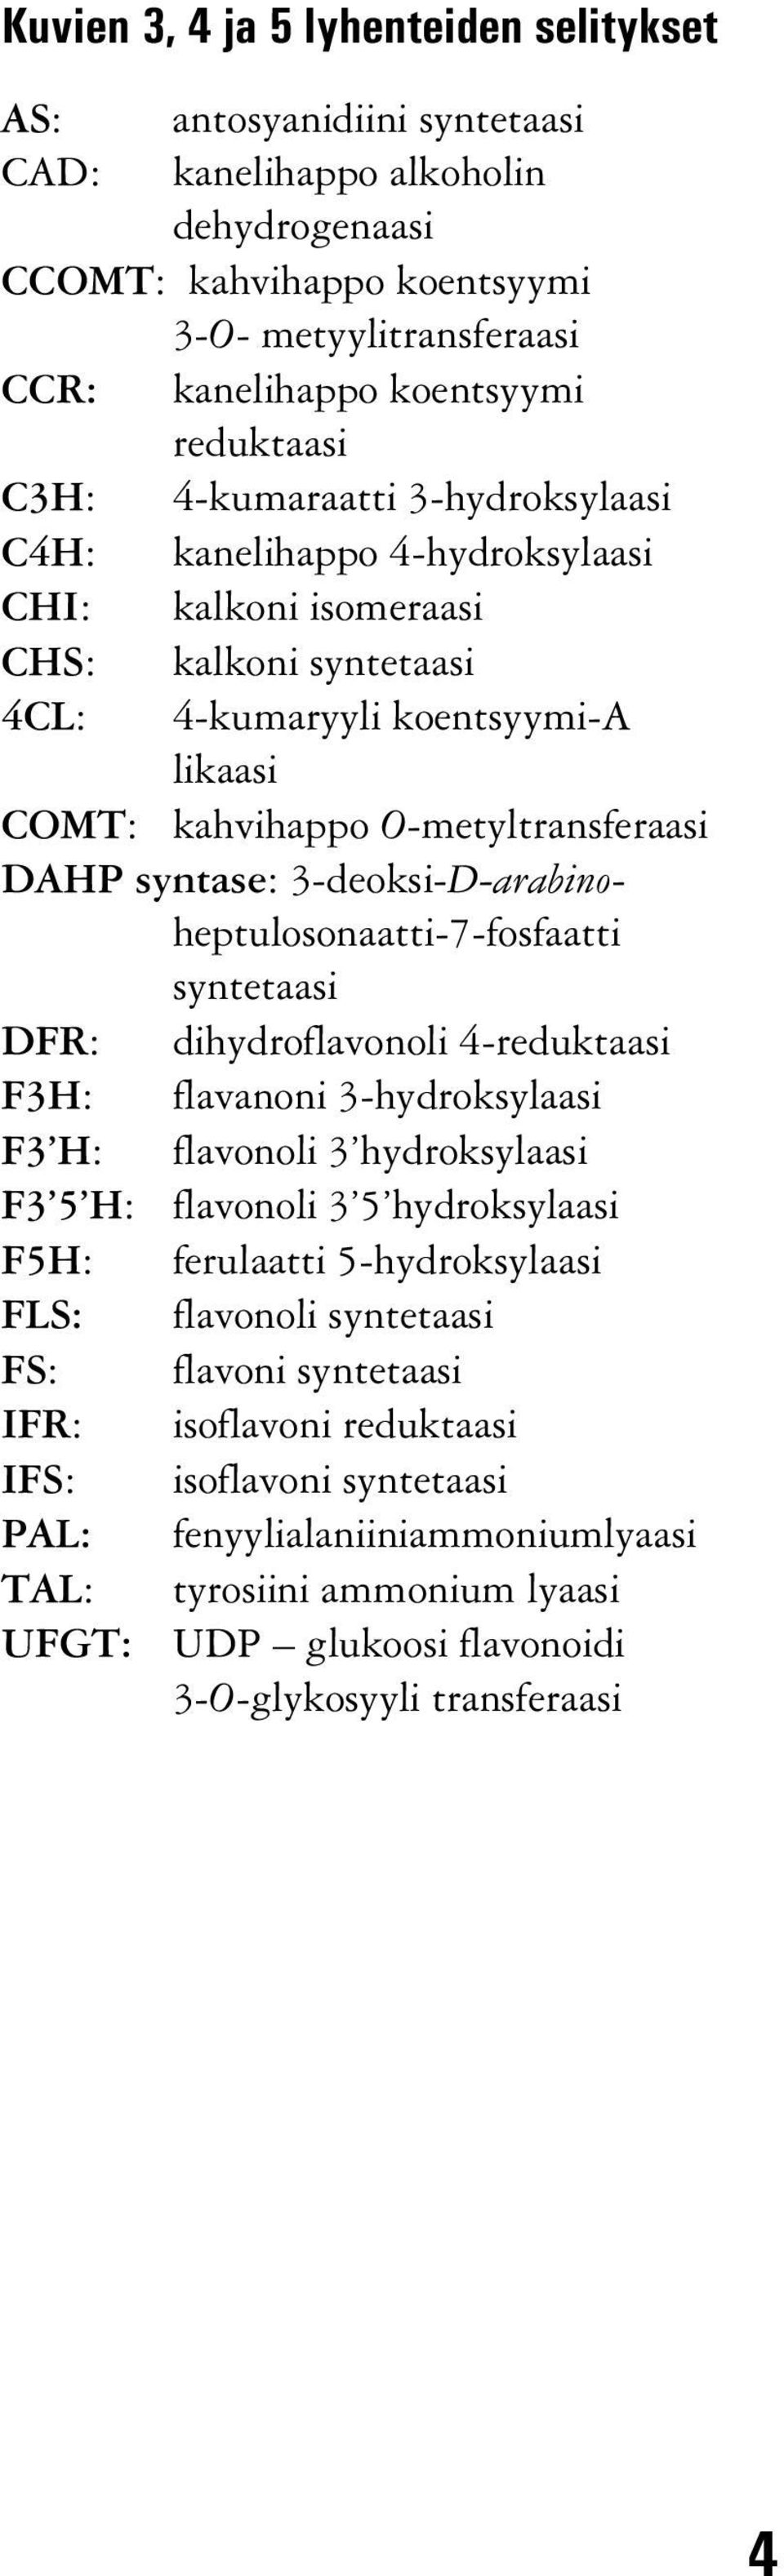 O-metyltransferaasi DAHP syntase: 3-deoksi-D-arabinoheptulosonaatti-7-fosfaatti syntetaasi DFR: dihydroflavonoli 4-reduktaasi F3H: flavanoni 3-hydroksylaasi F3 H: flavonoli 3 hydroksylaasi F3 5 H: